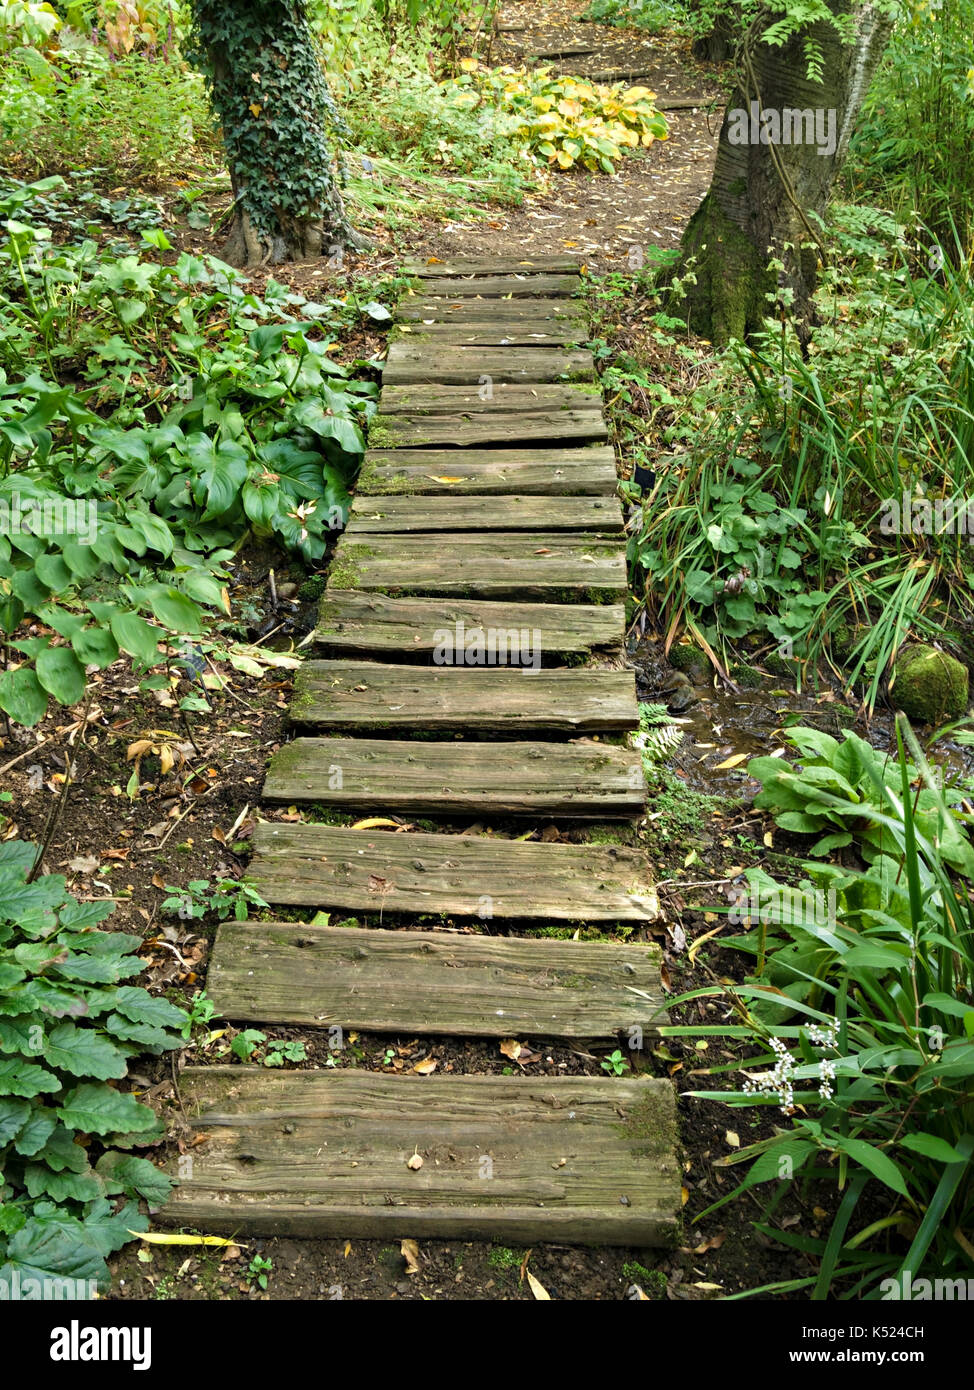 Alten rustikalen Woodland Garden Path von Split aus Holz Holz Protokolle, Coton Manor Gardens, Northamptonshire, England, Großbritannien Stockfoto